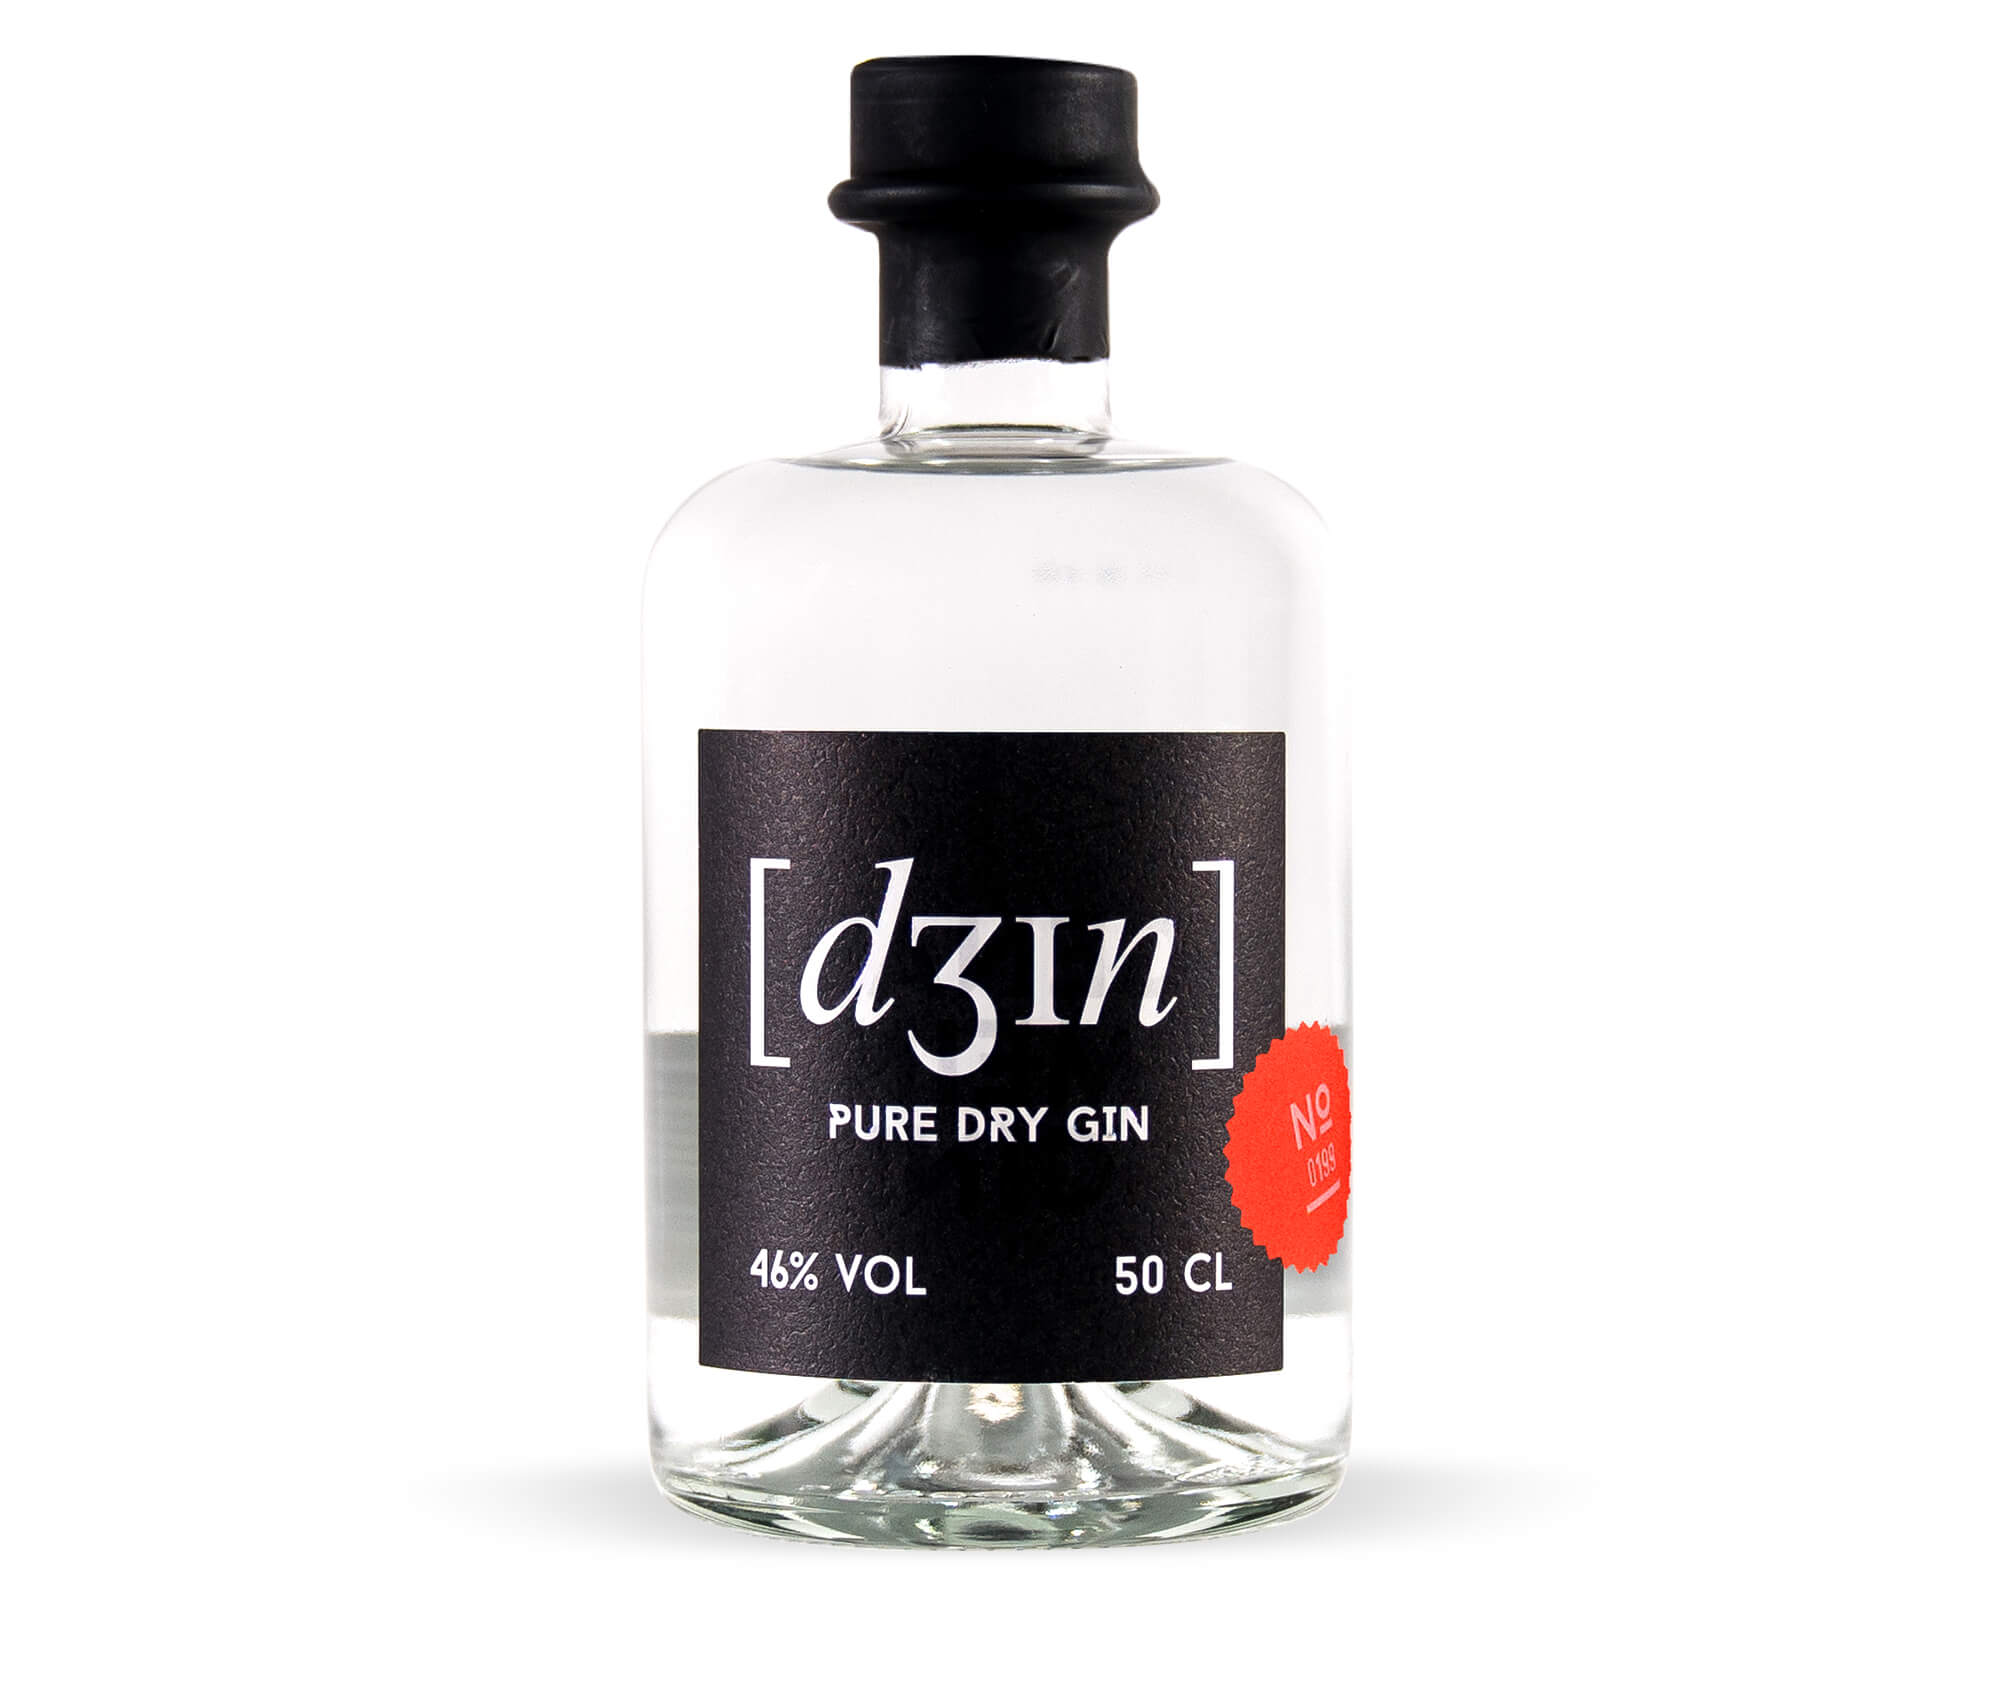 Schau und Horch Produktfotografie Dein Gin 3 1 - Corporate Identity für [dʒɪn]